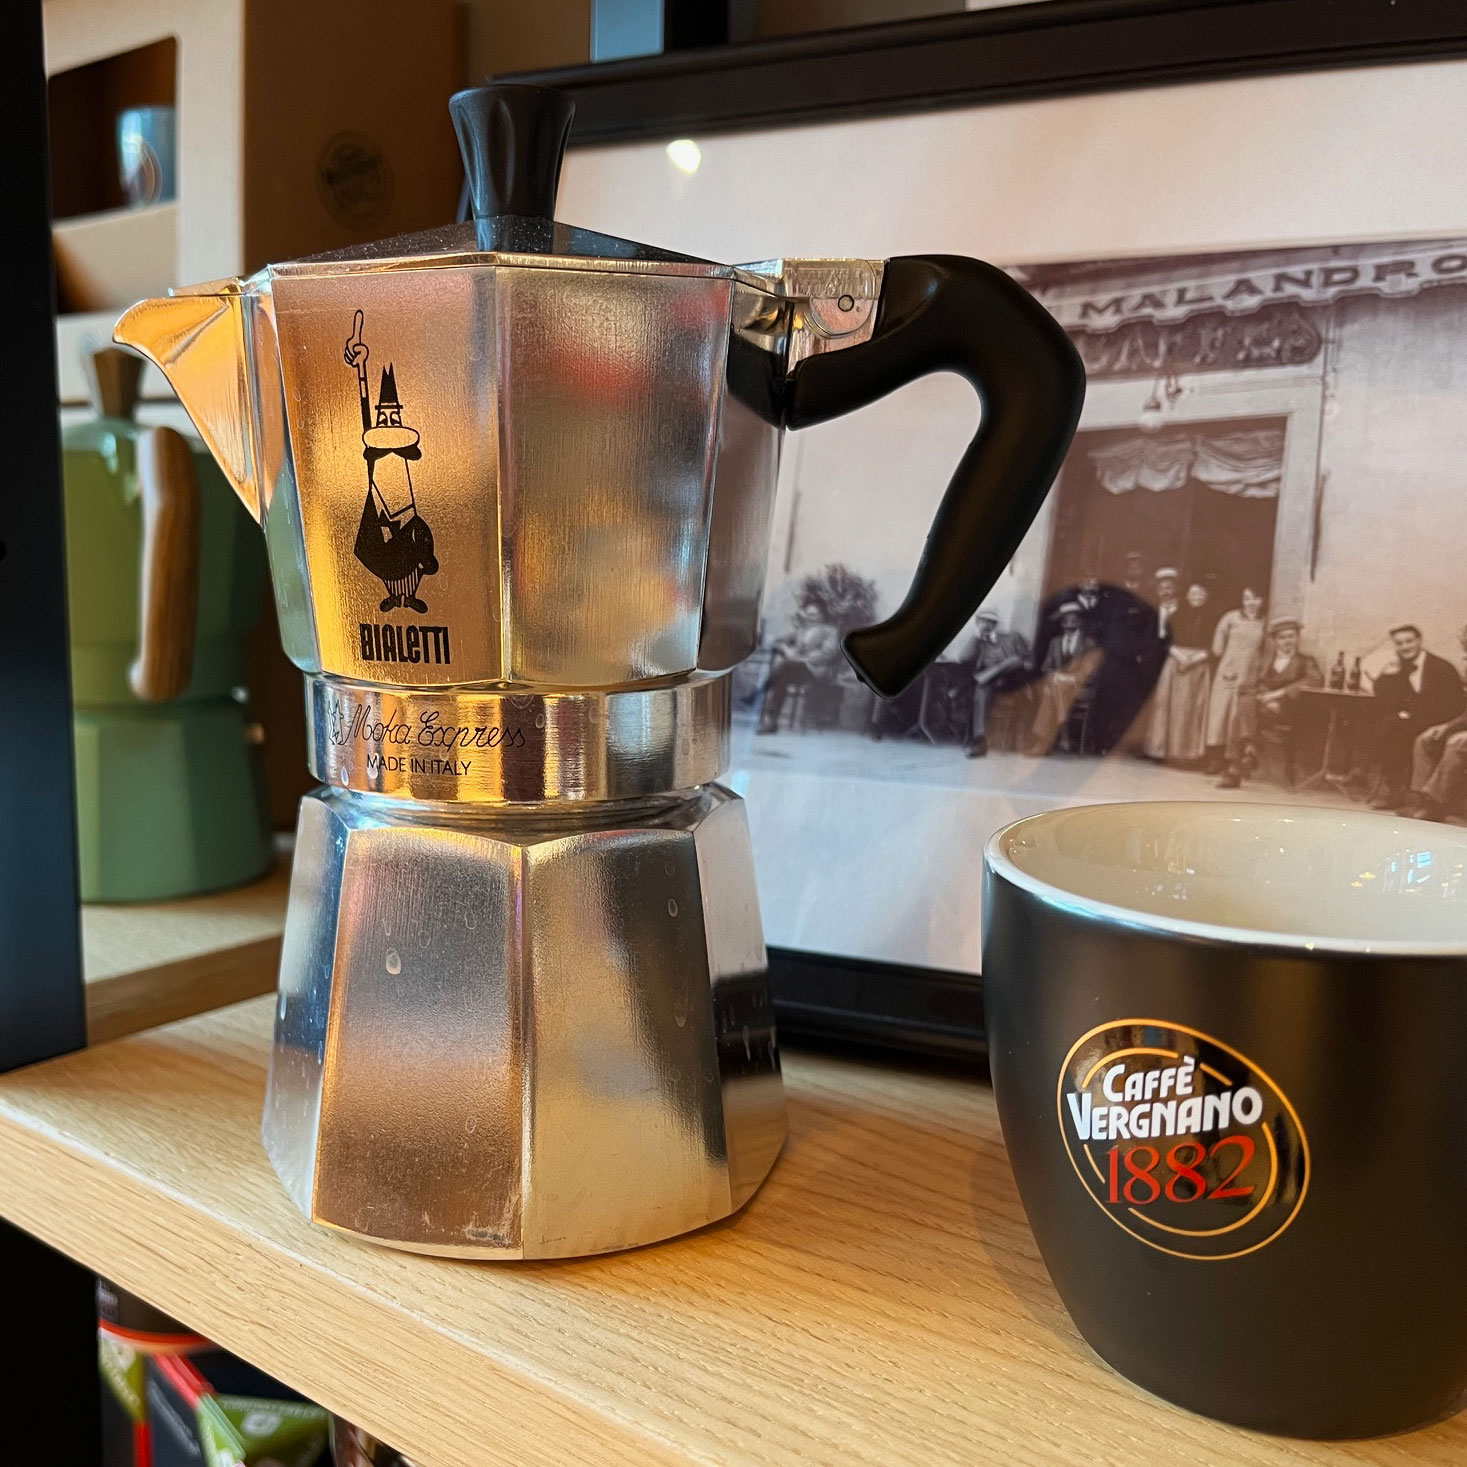 A Caffè Vergnanót 1882-ben alapították, a Bialettit 1919-ben. Már csak a múltja és a legtöbb innovációja miatt se szólja le senki az olasz kávékultúrát akkor se, ha ő éppen világos pörkölést kortyolgat ma egy speciality kávézóban